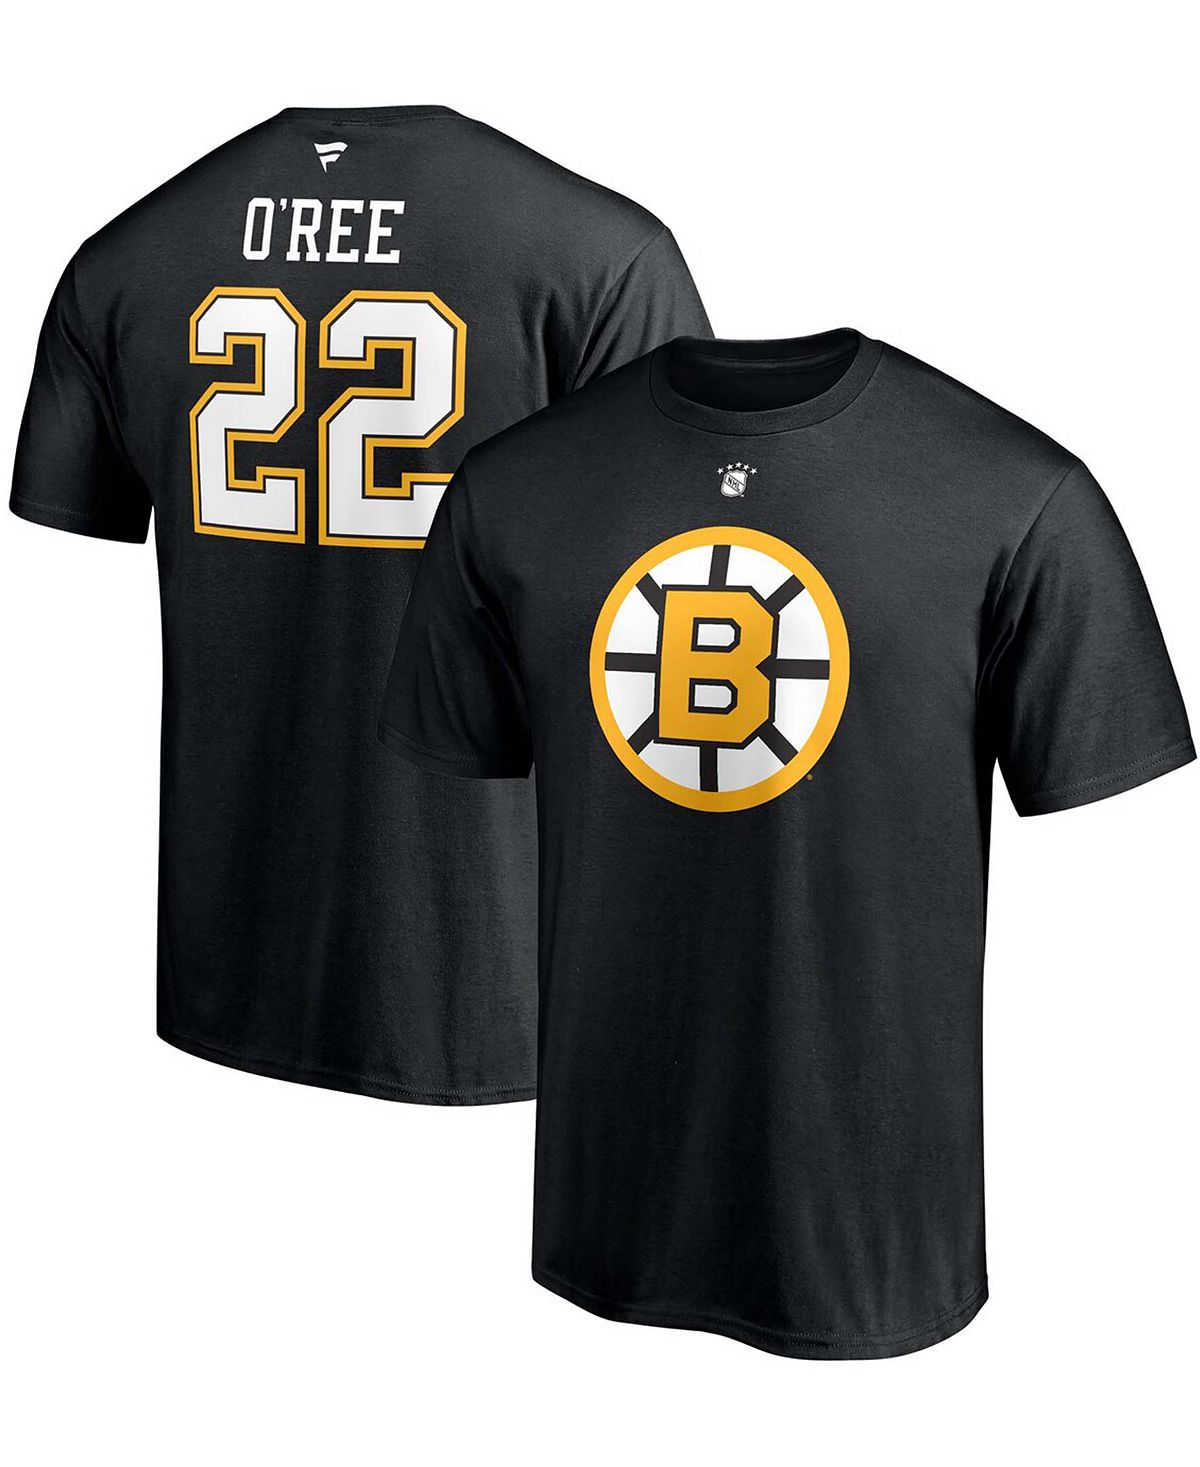 Мужская футболка willie o'ree black boston bruins authentic stack с именем и номером игрока на пенсии Fanatics, черный printio 3d кружка boston bruins